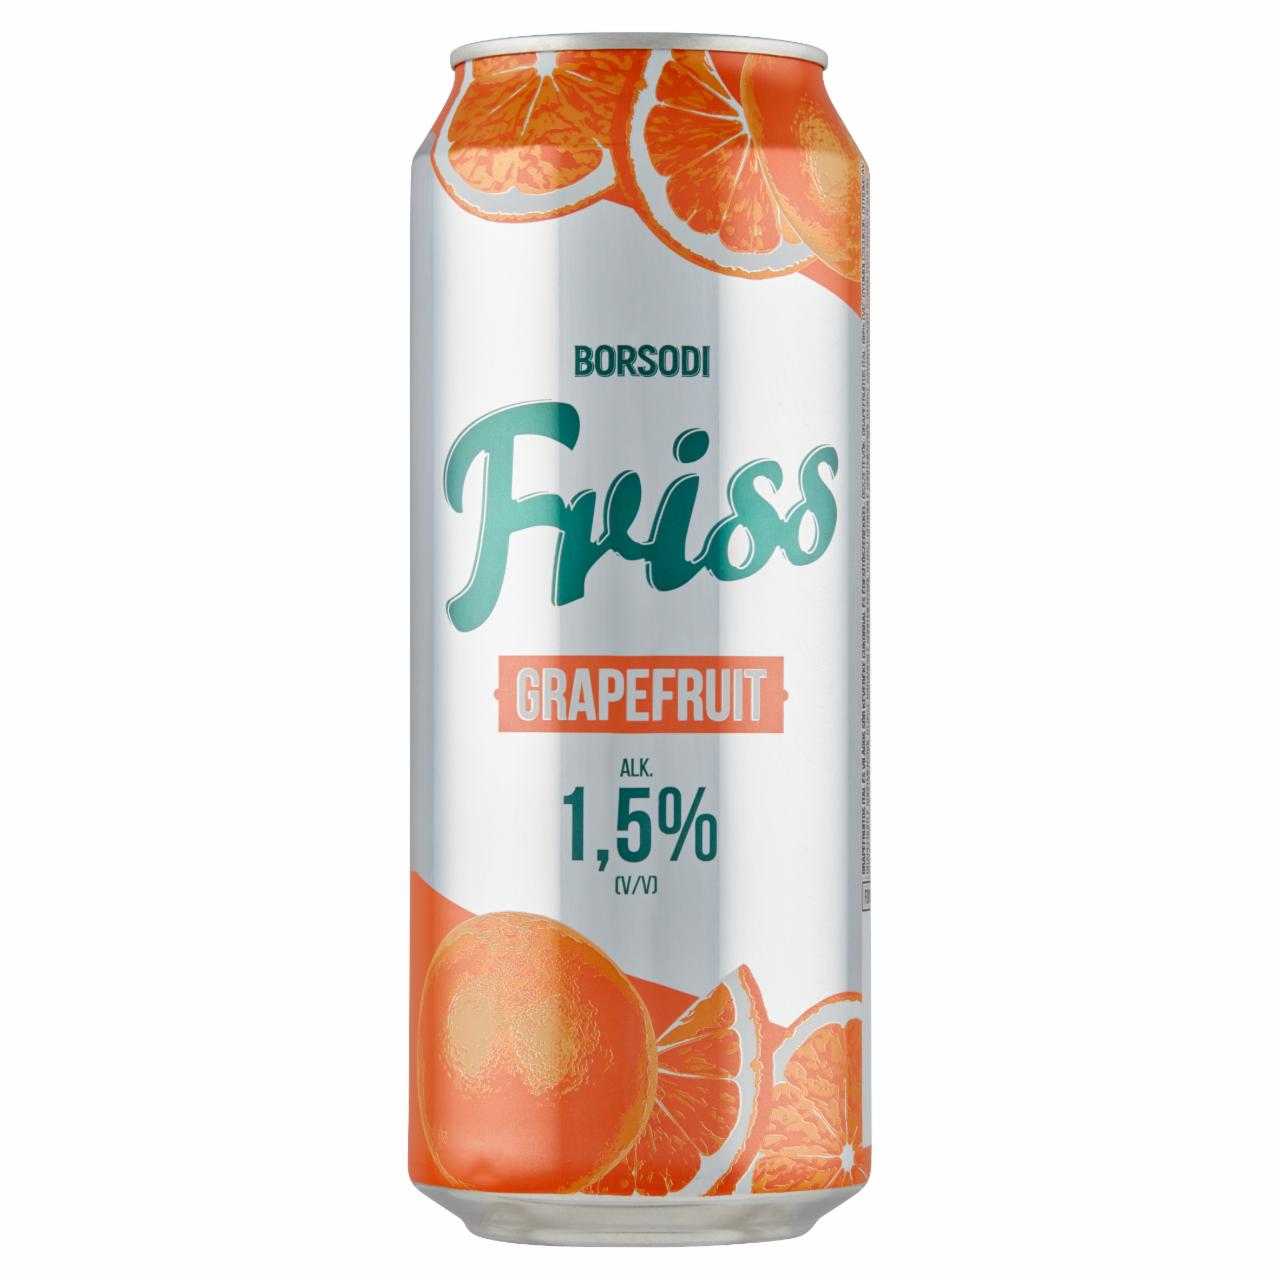 Képek - Borsodi Friss grapefruitos ital és világos sör keveréke cukorral és édesítőszerekkel 1,5% 0,5 l